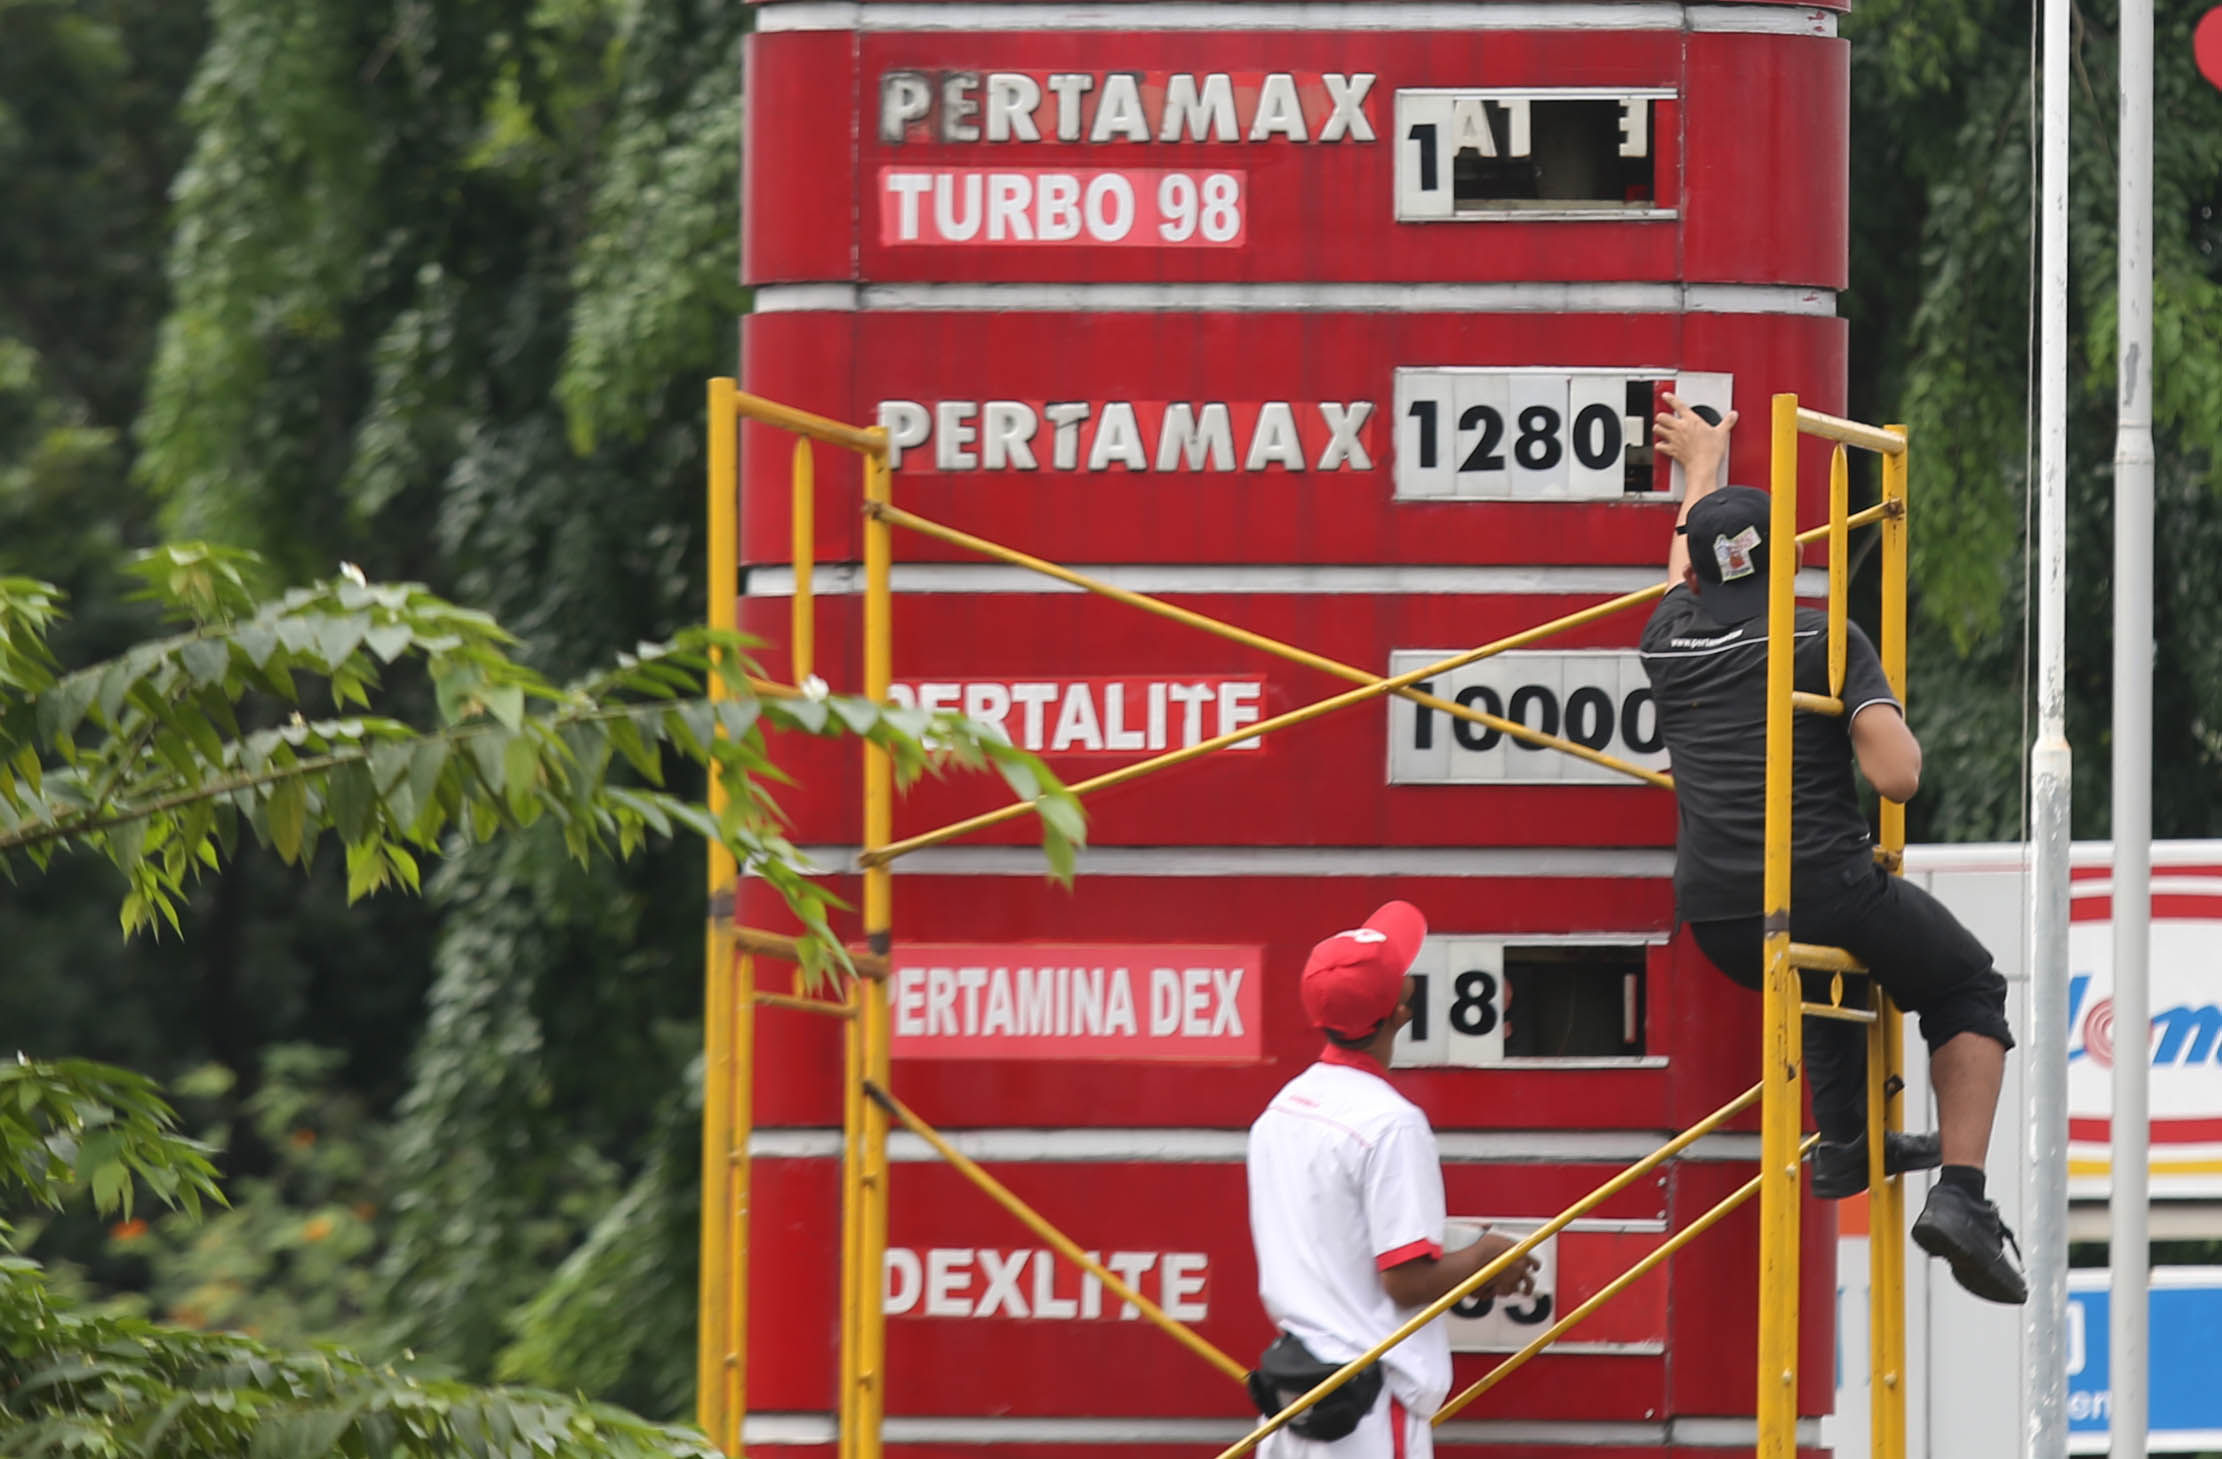 Petugas tengah mengganti papan harga BBM di sebuah SPBU kawasan Kebun Jeruk Jakarta Barat. PT Pertamina hari ini 3 Januari 2023 pukul 14.00 menurunkan harga Pertamax,Pertamax Turbo dan Pertamina Dex. Foto : Panji Asmoro/TrenAsia